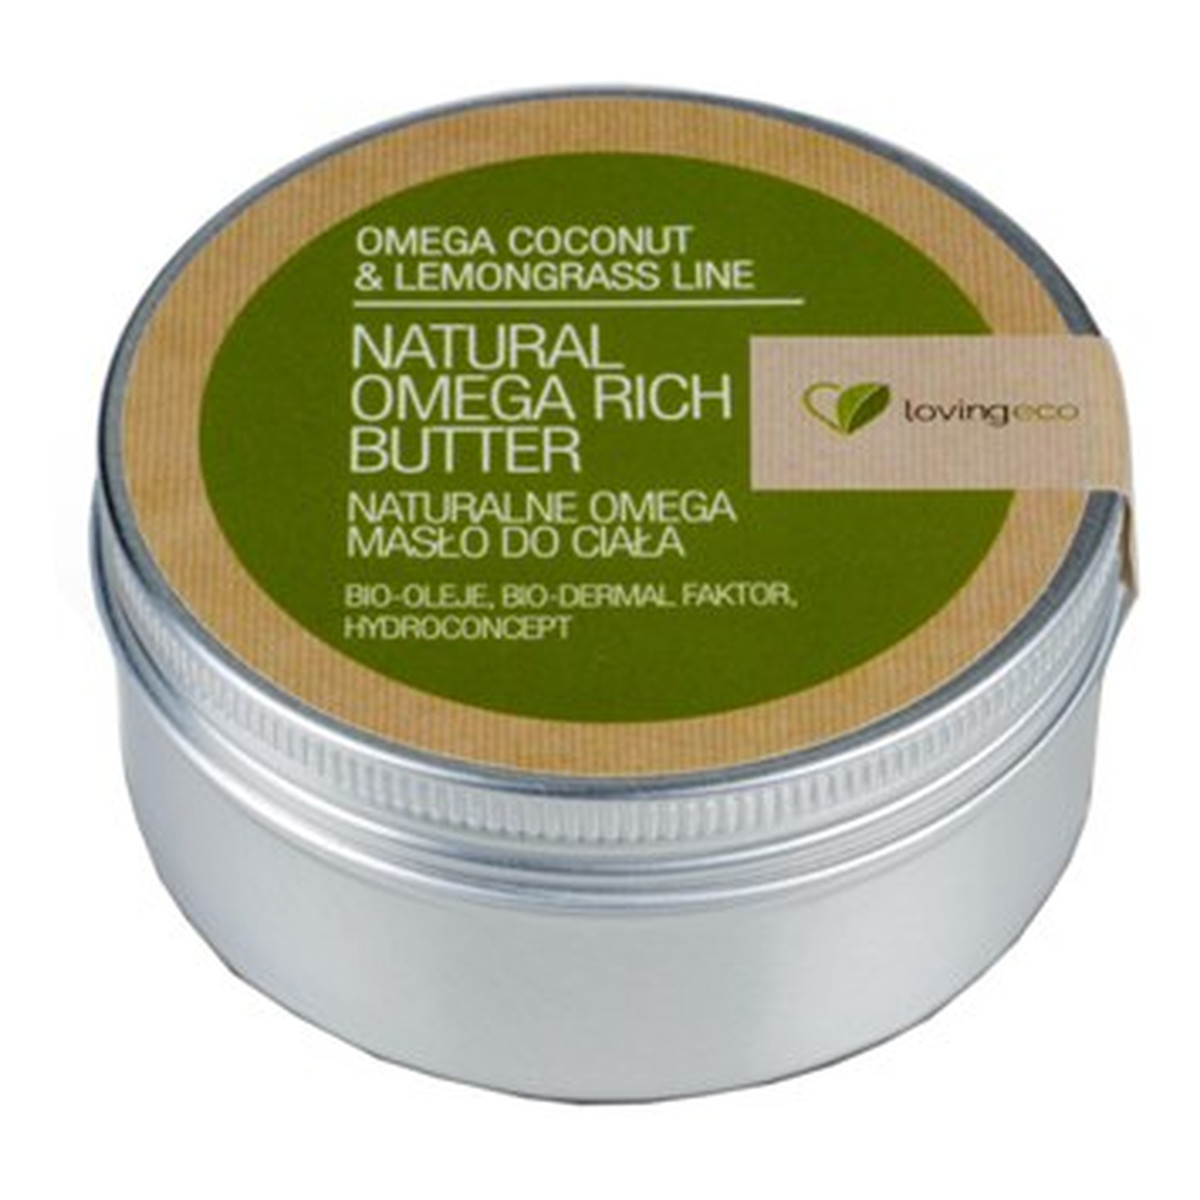 Lovingeco Omega Coconut & Lemongrass Line Naturalne Omega Masła Do Ciała 150ml